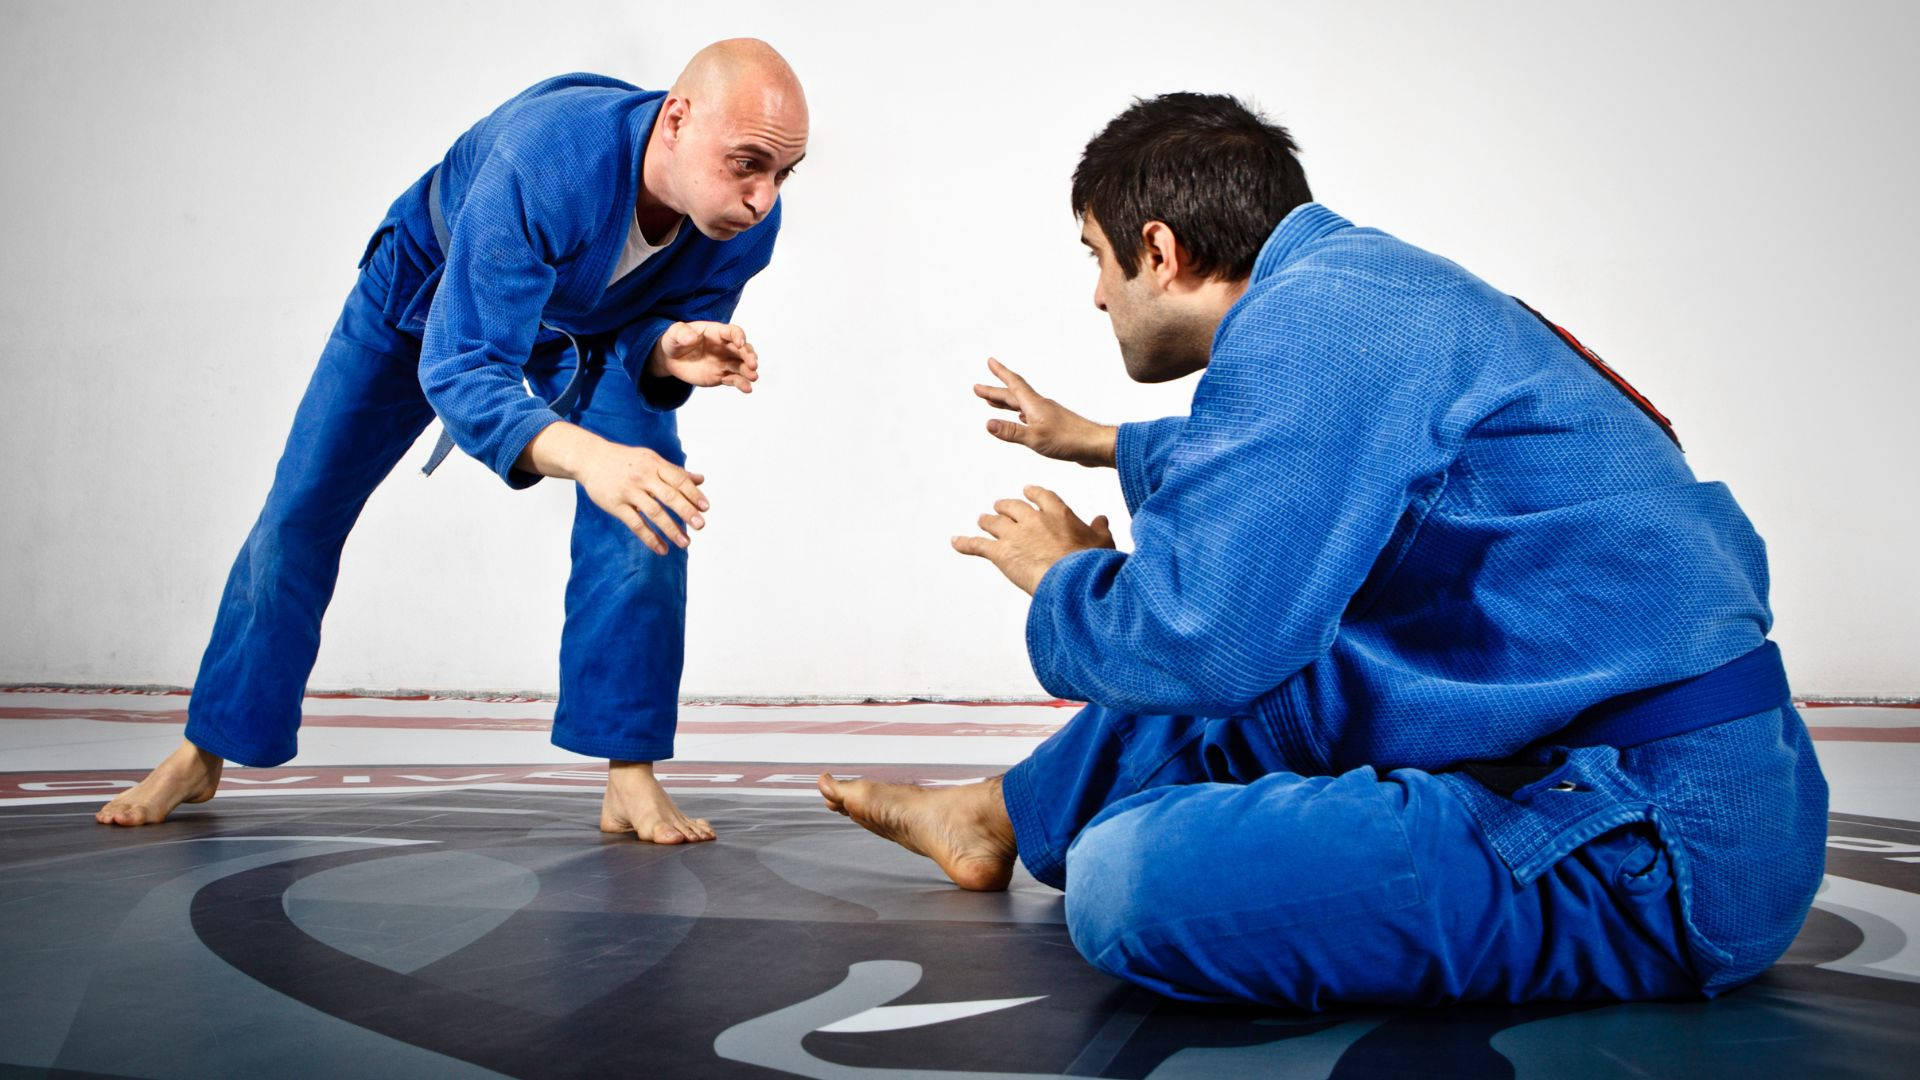 Athletic Brazilian Jiu-jitsu Fighter In Action